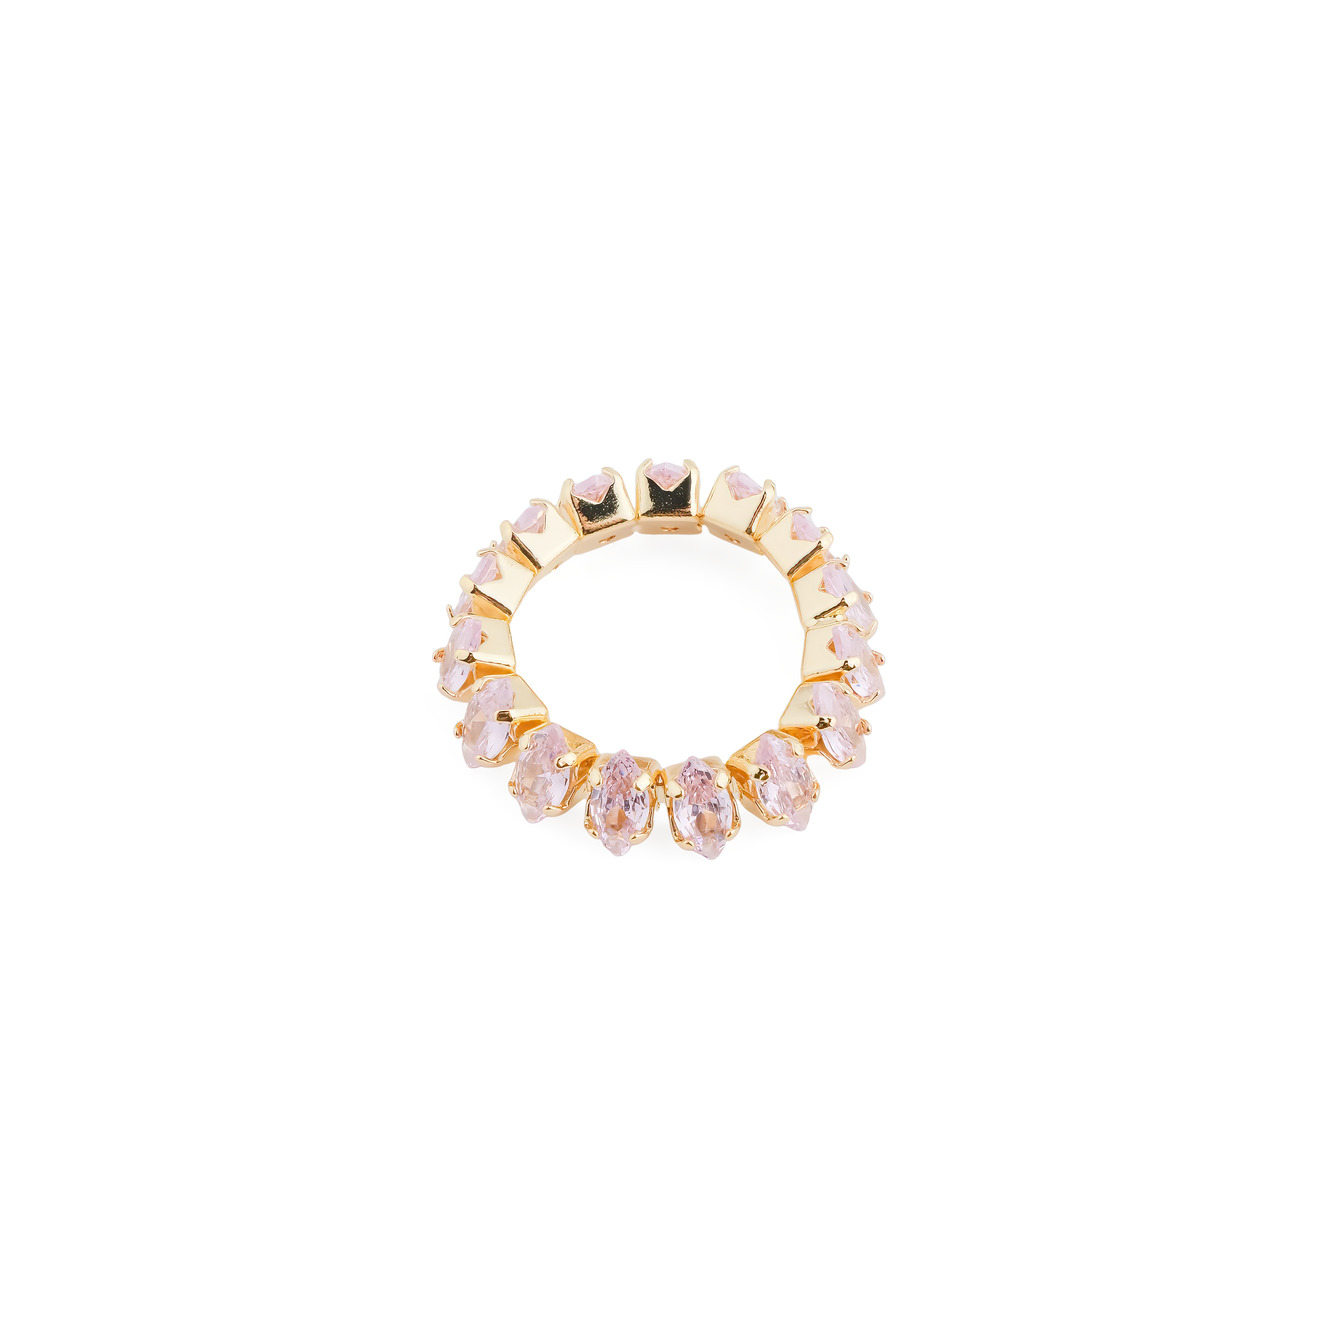 Herald Percy Кольцо с розовыми кристаллами herald percy золотистое фигурное кольцо с черным сердцем